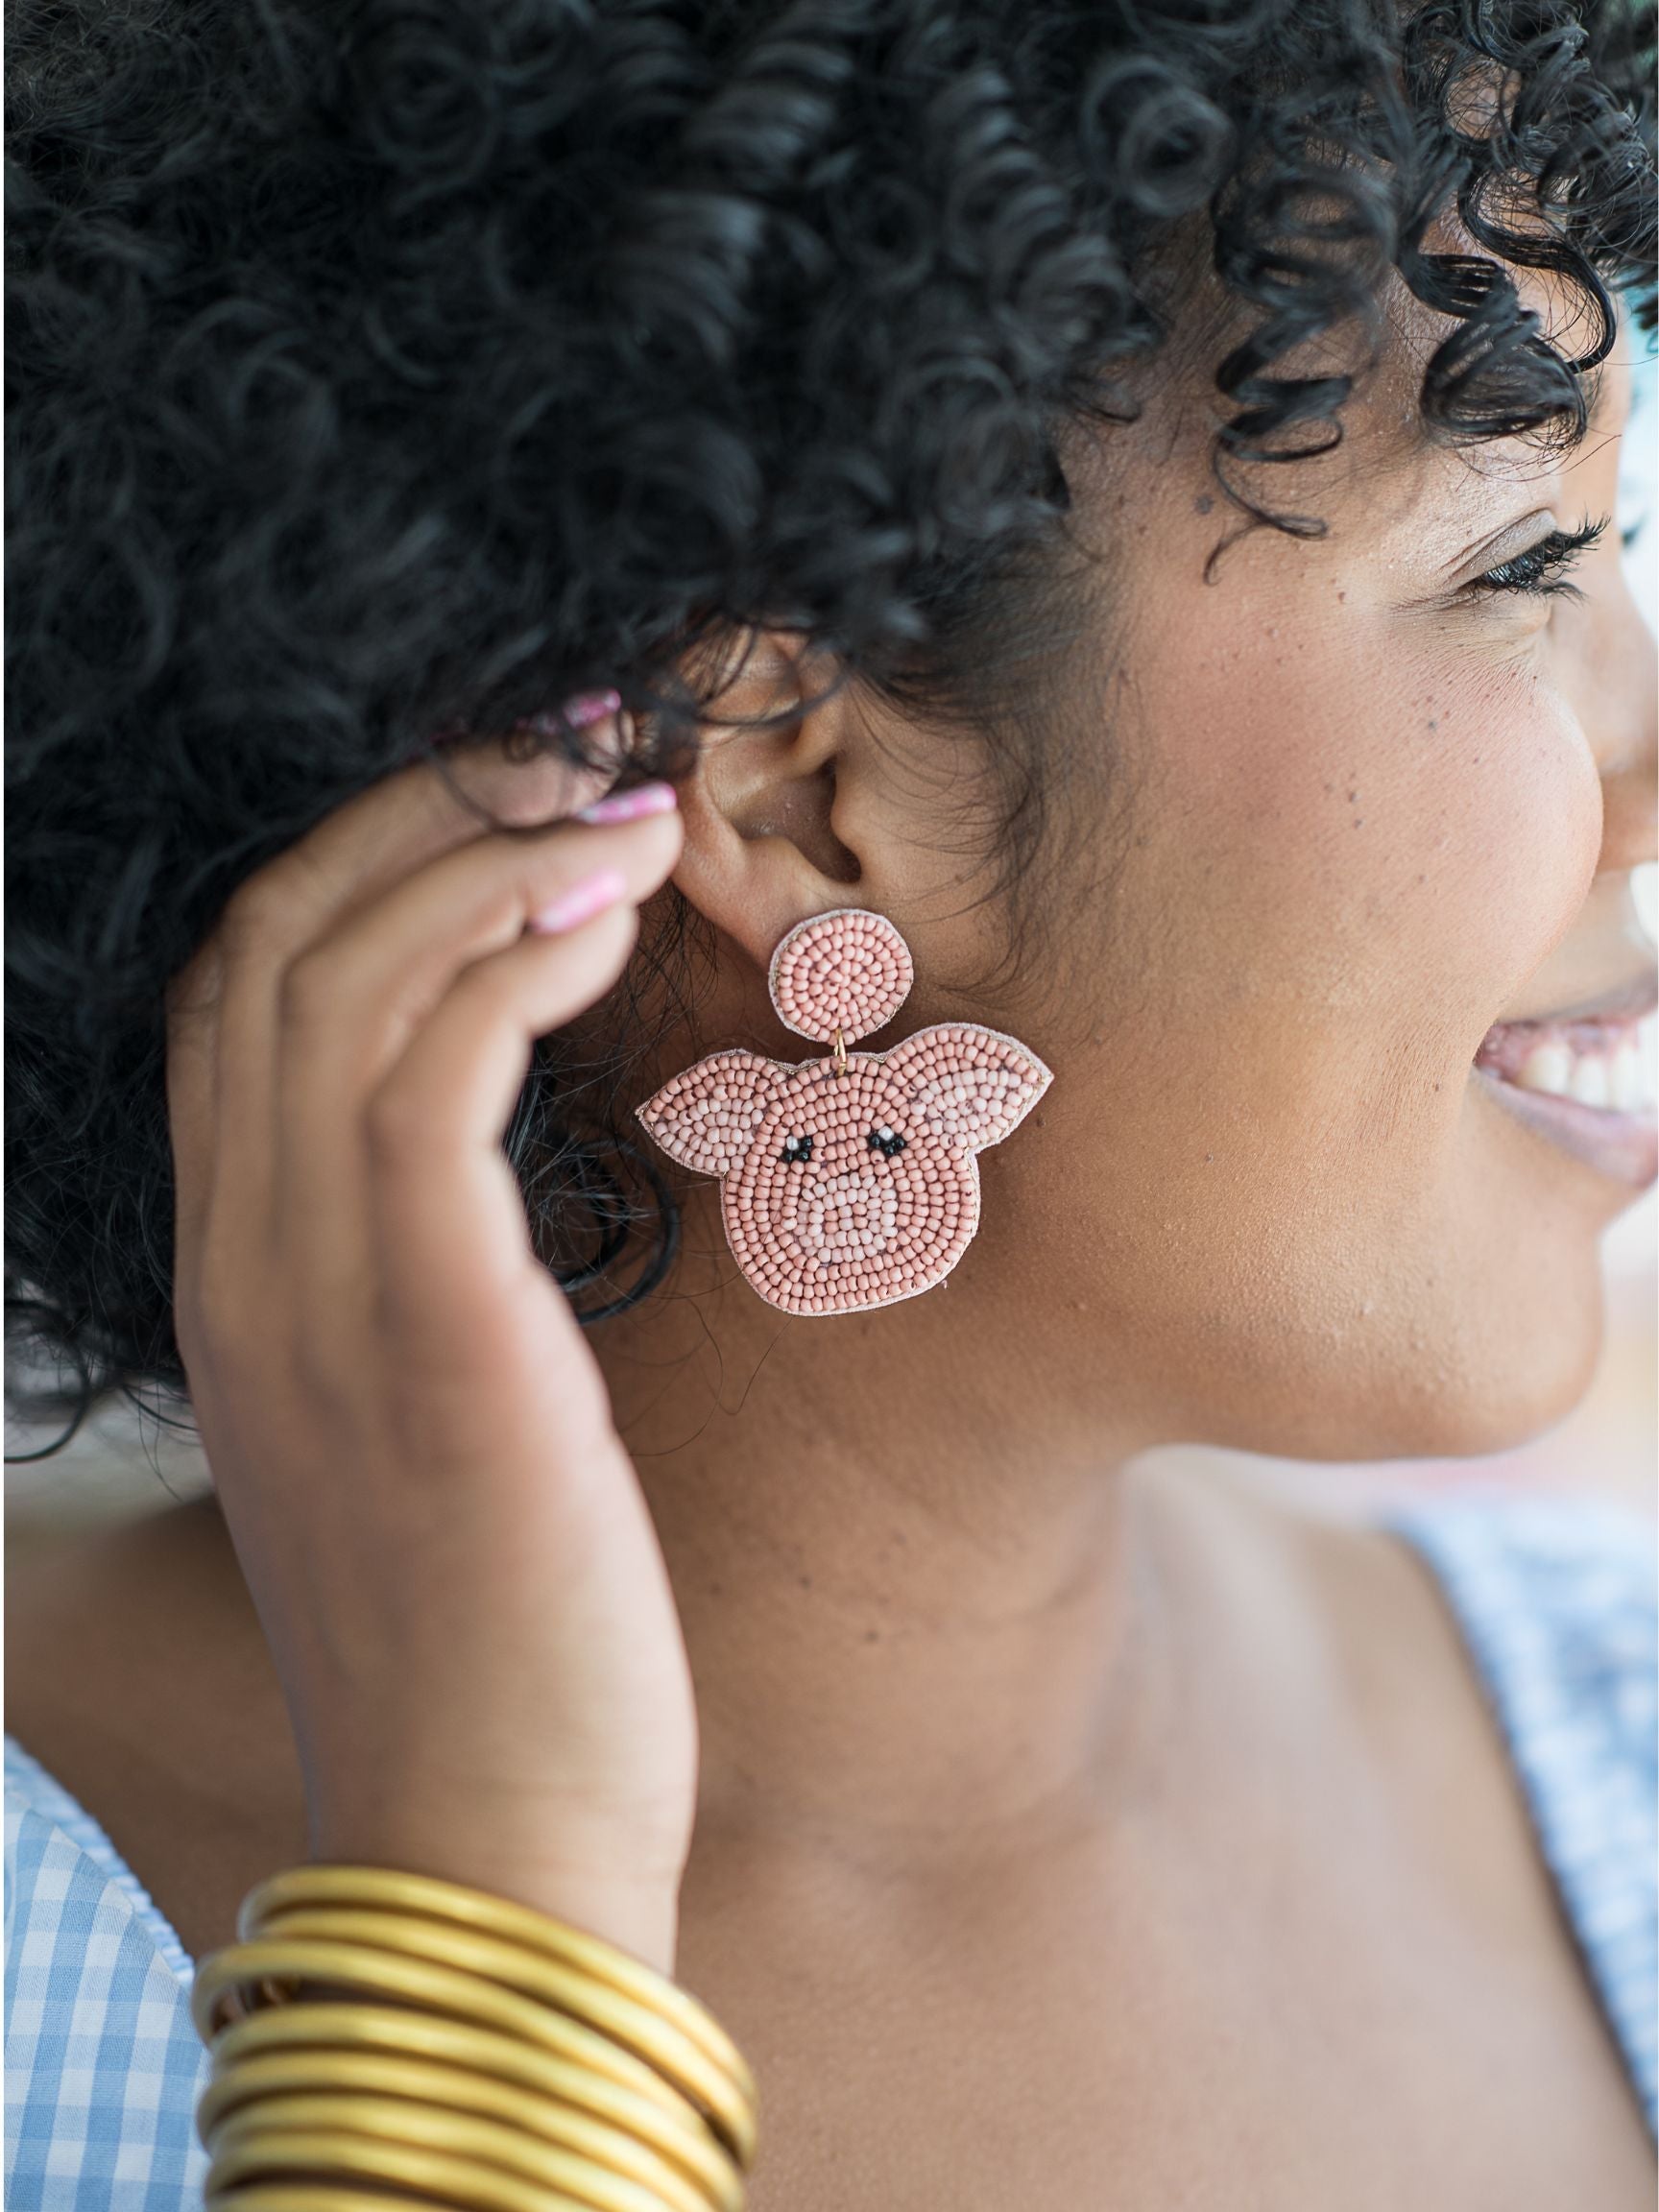 A woman wearing pink earrings